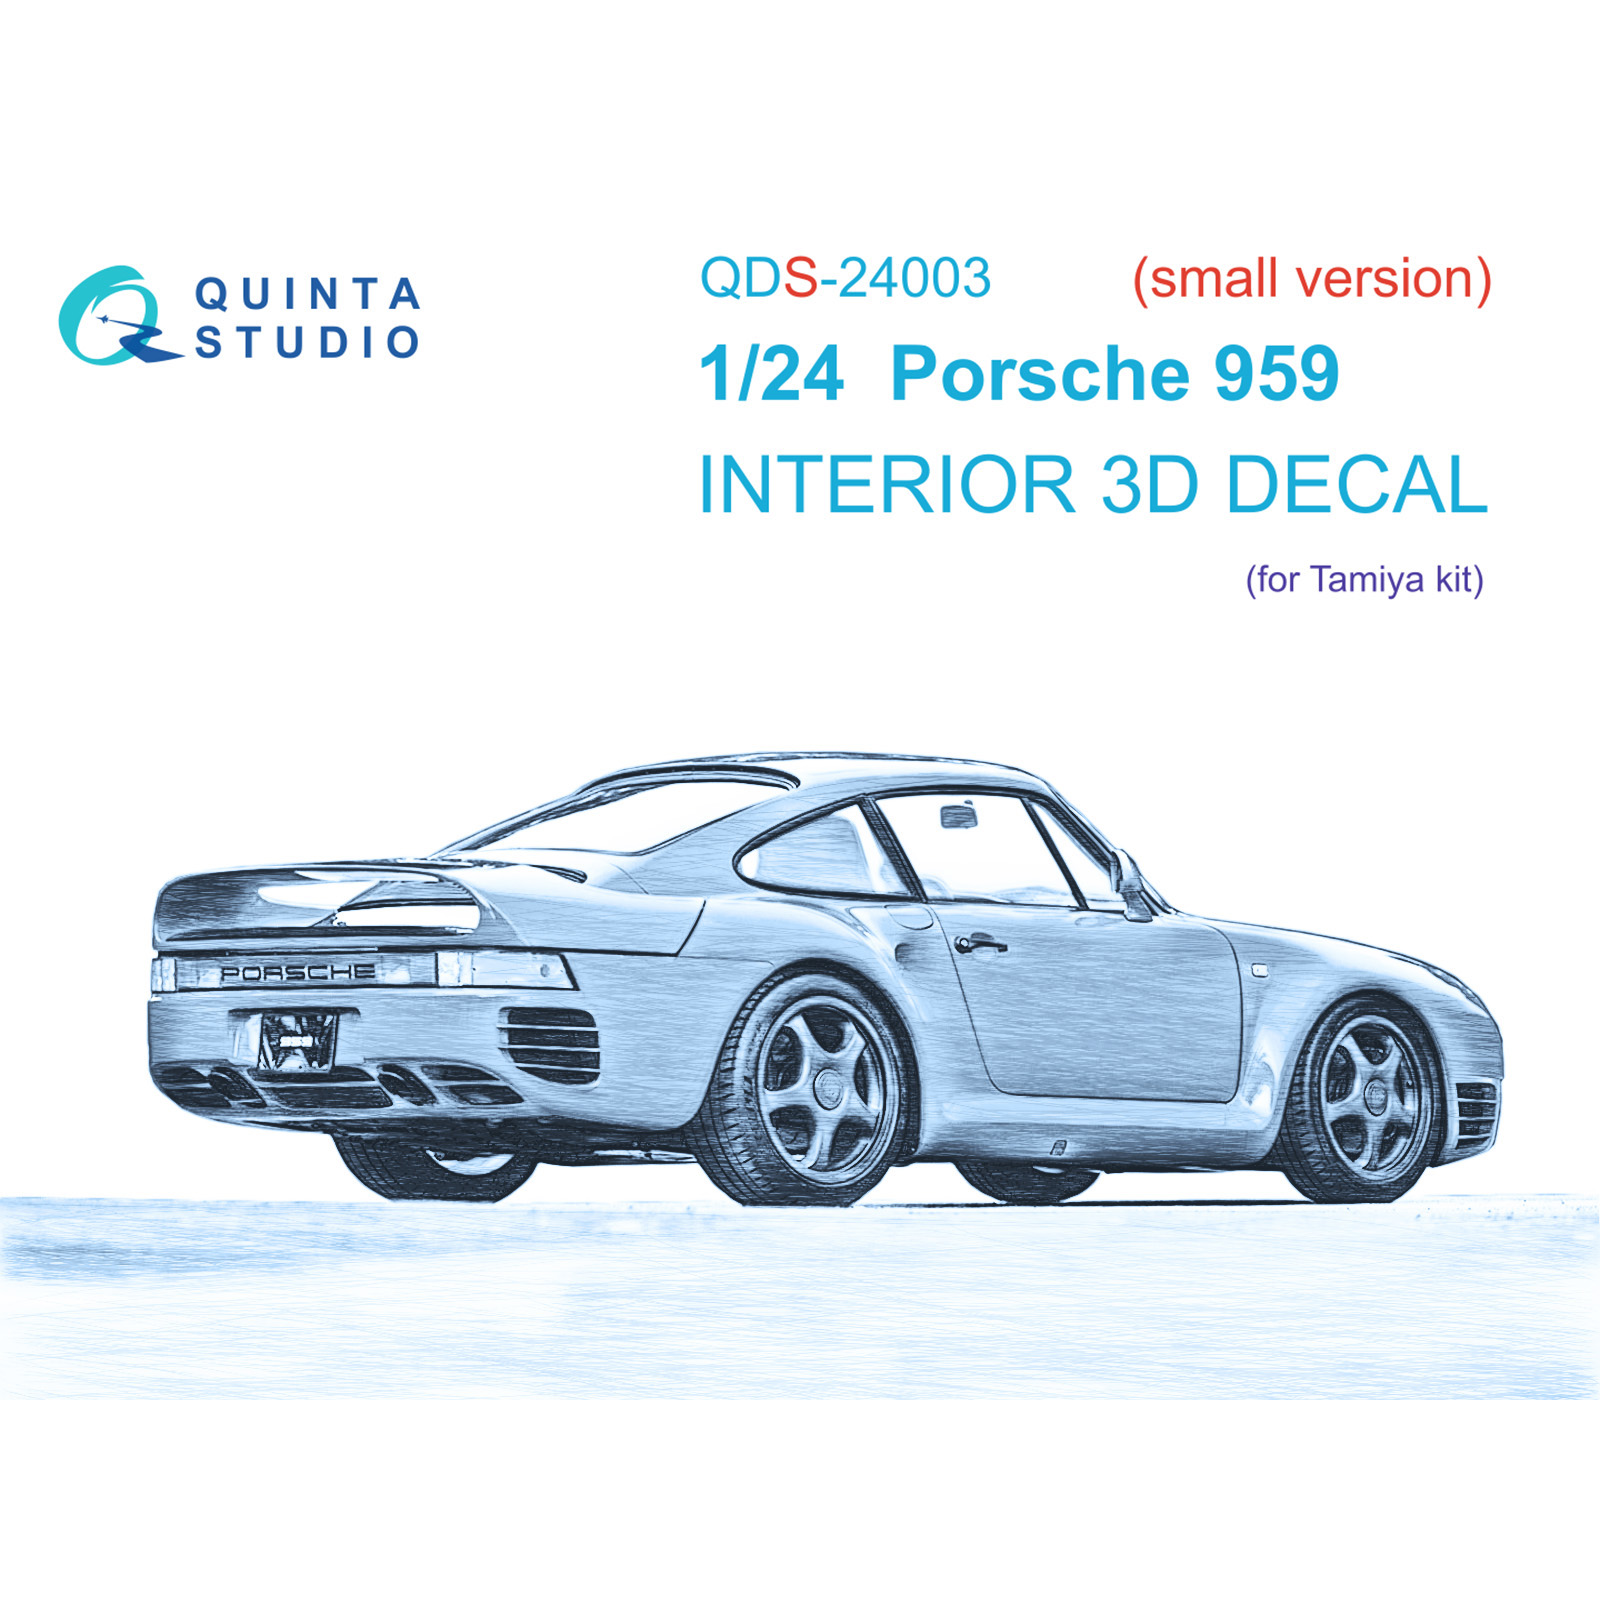 3D Декаль Quinta Studio интерьера кабины Porsche 959 Малая версия QDS-24003